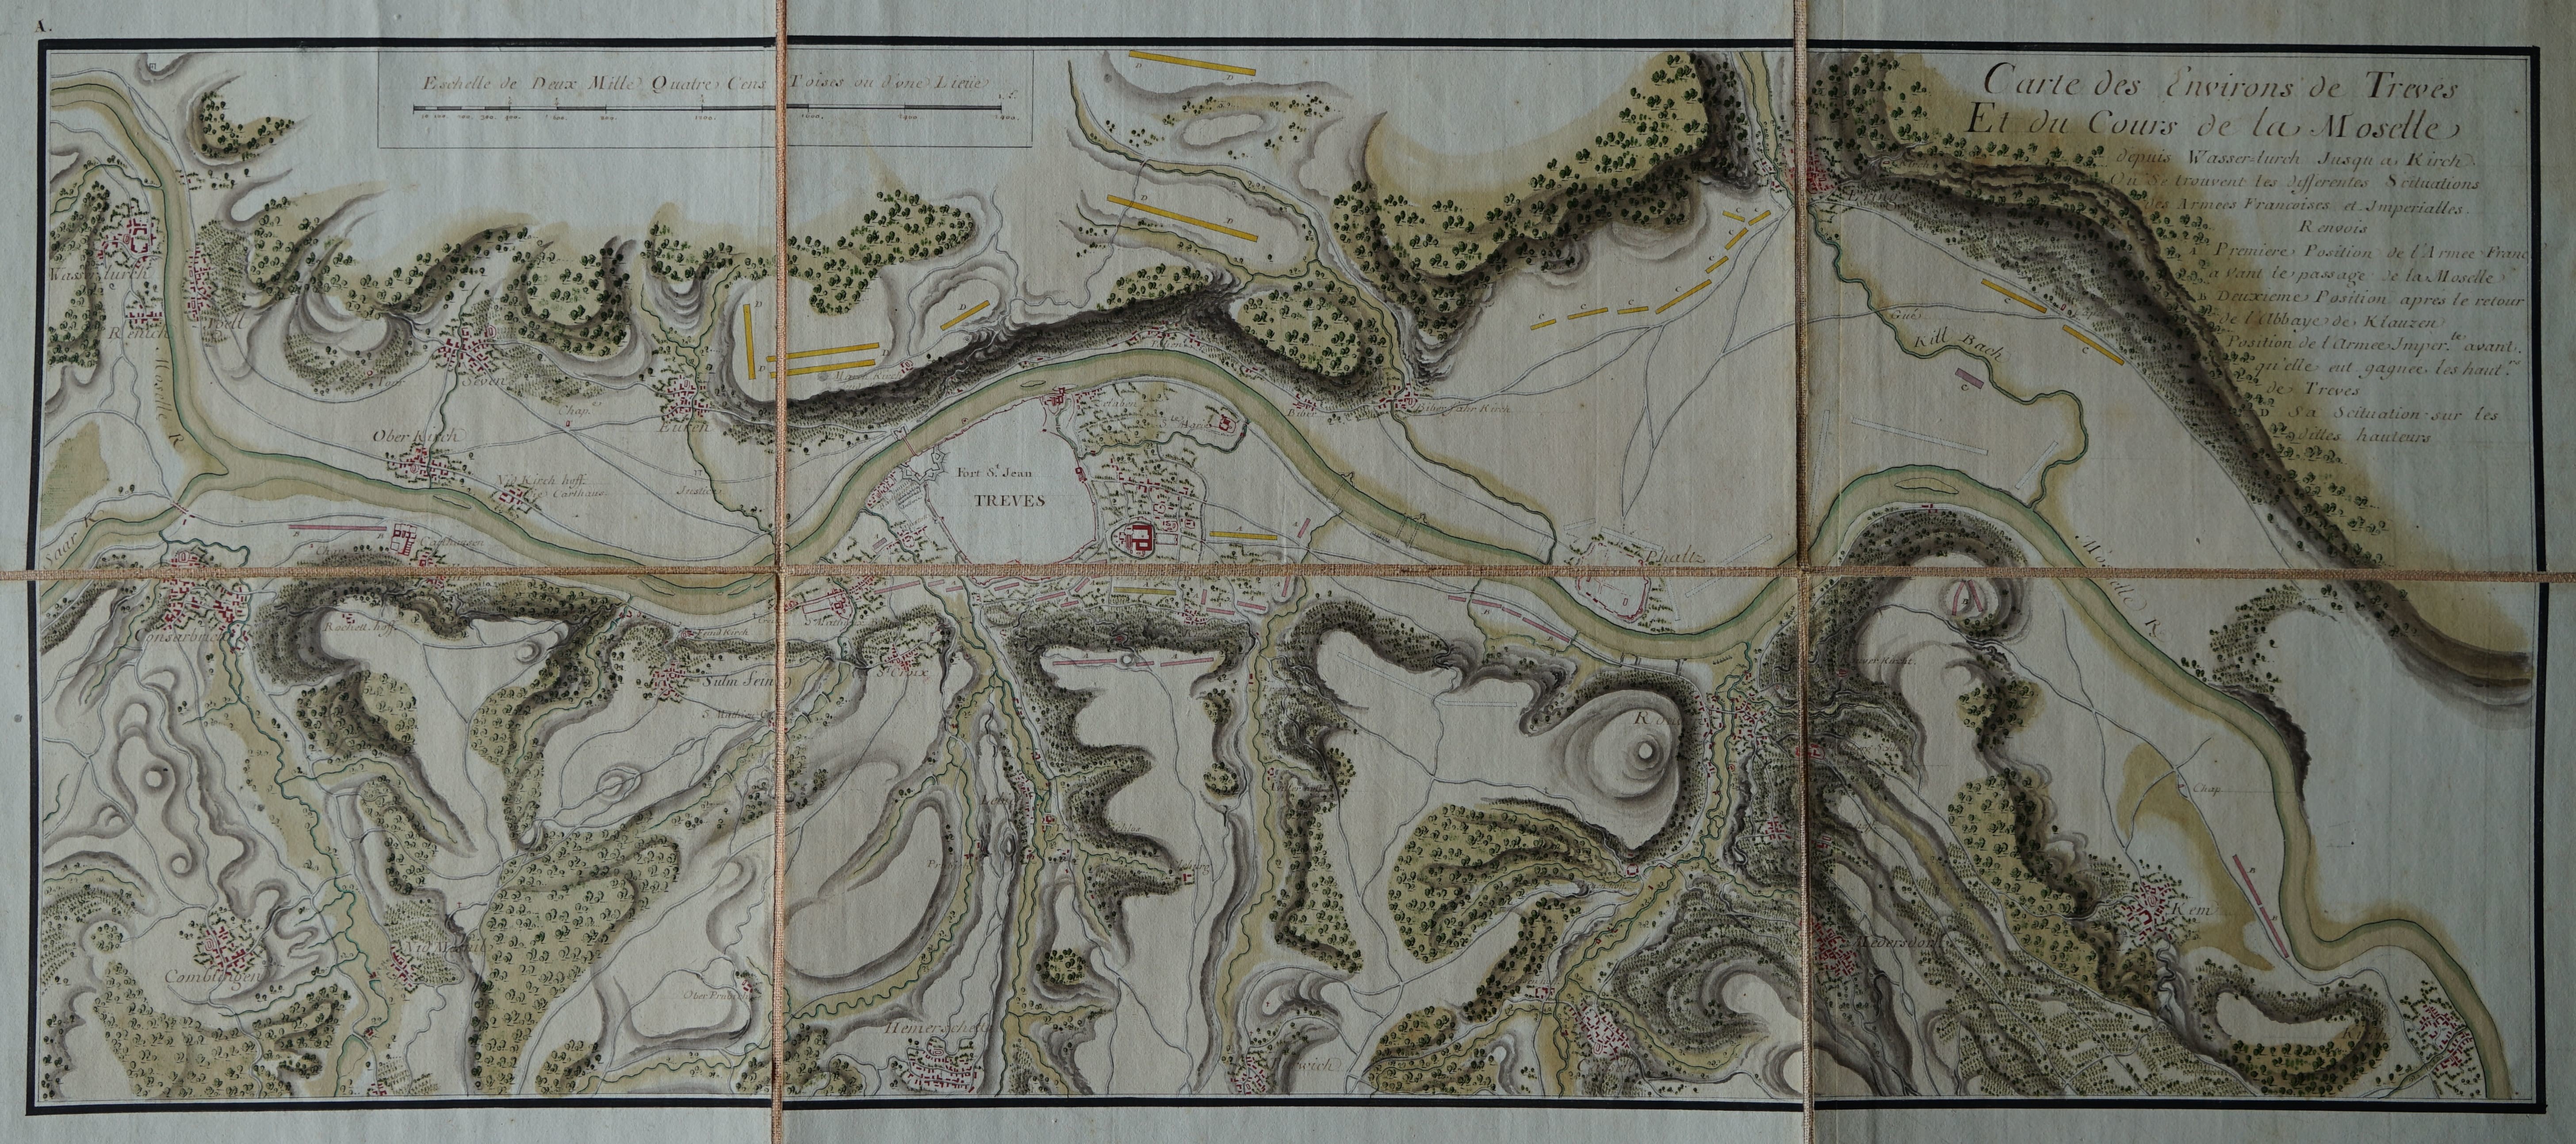 Karte mit der Umgebung von Trier und den Truppenbewegungen vor und anch dem "Treffen bei Klausen" 1735 (Stadtmuseum Simeonstift Trier CC BY-NC-ND)